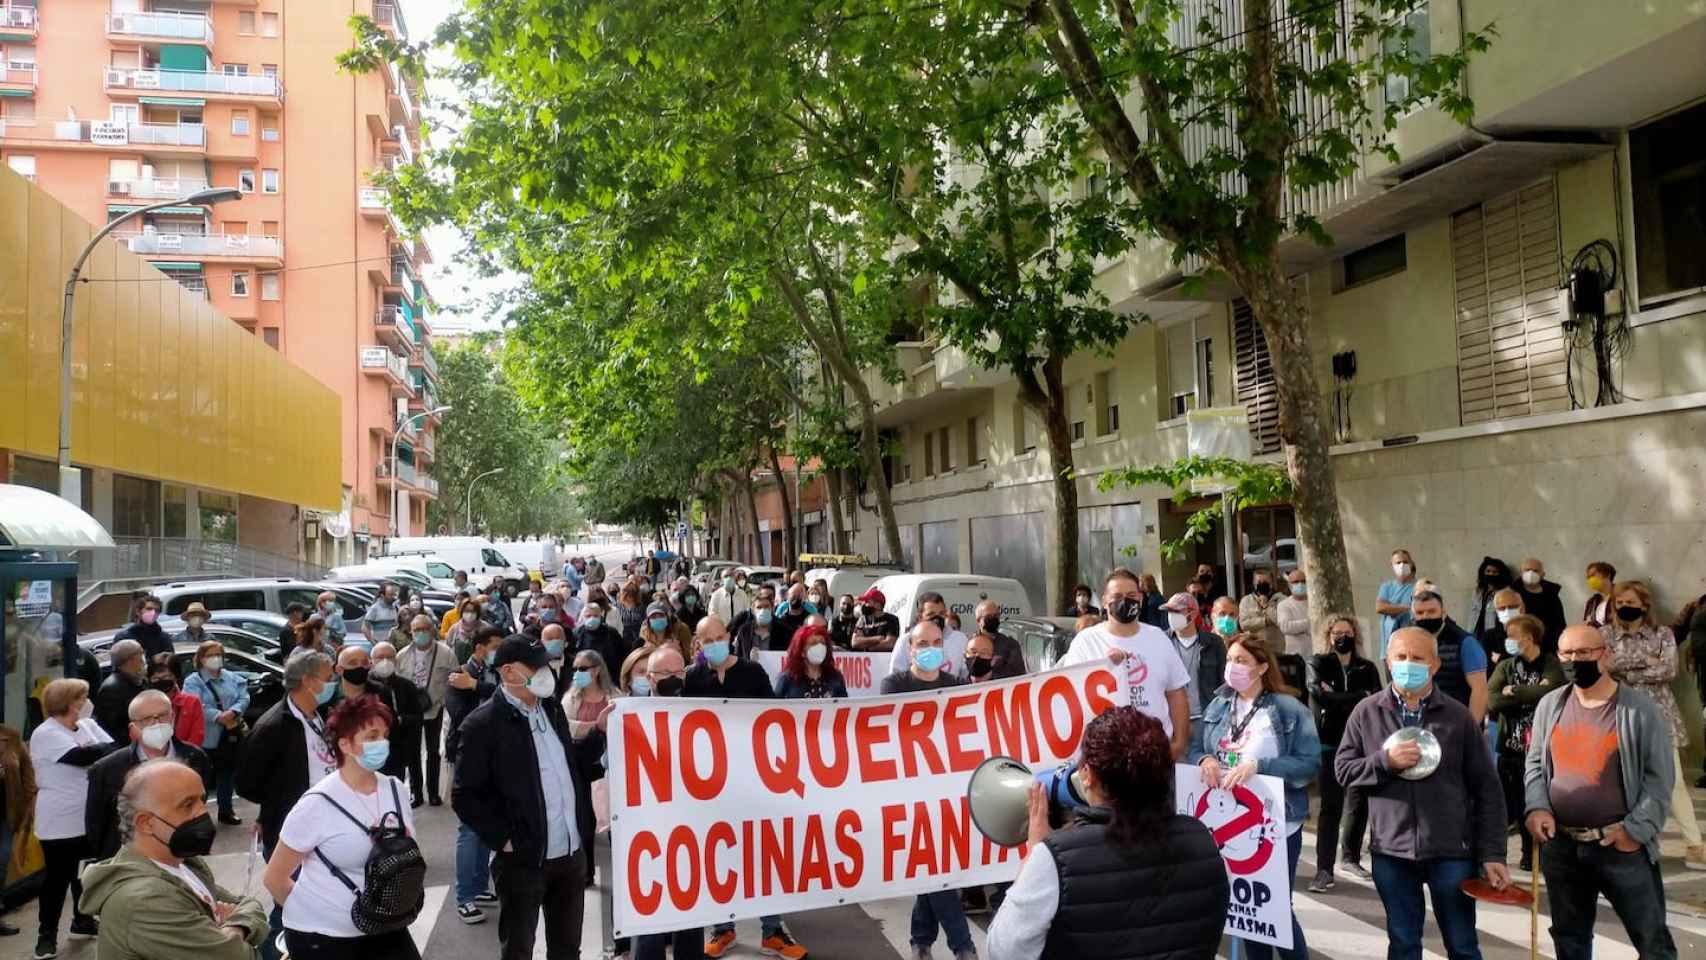 Protesta vecinal este domingo contra una 'cocina fantasma' / CEDIDA